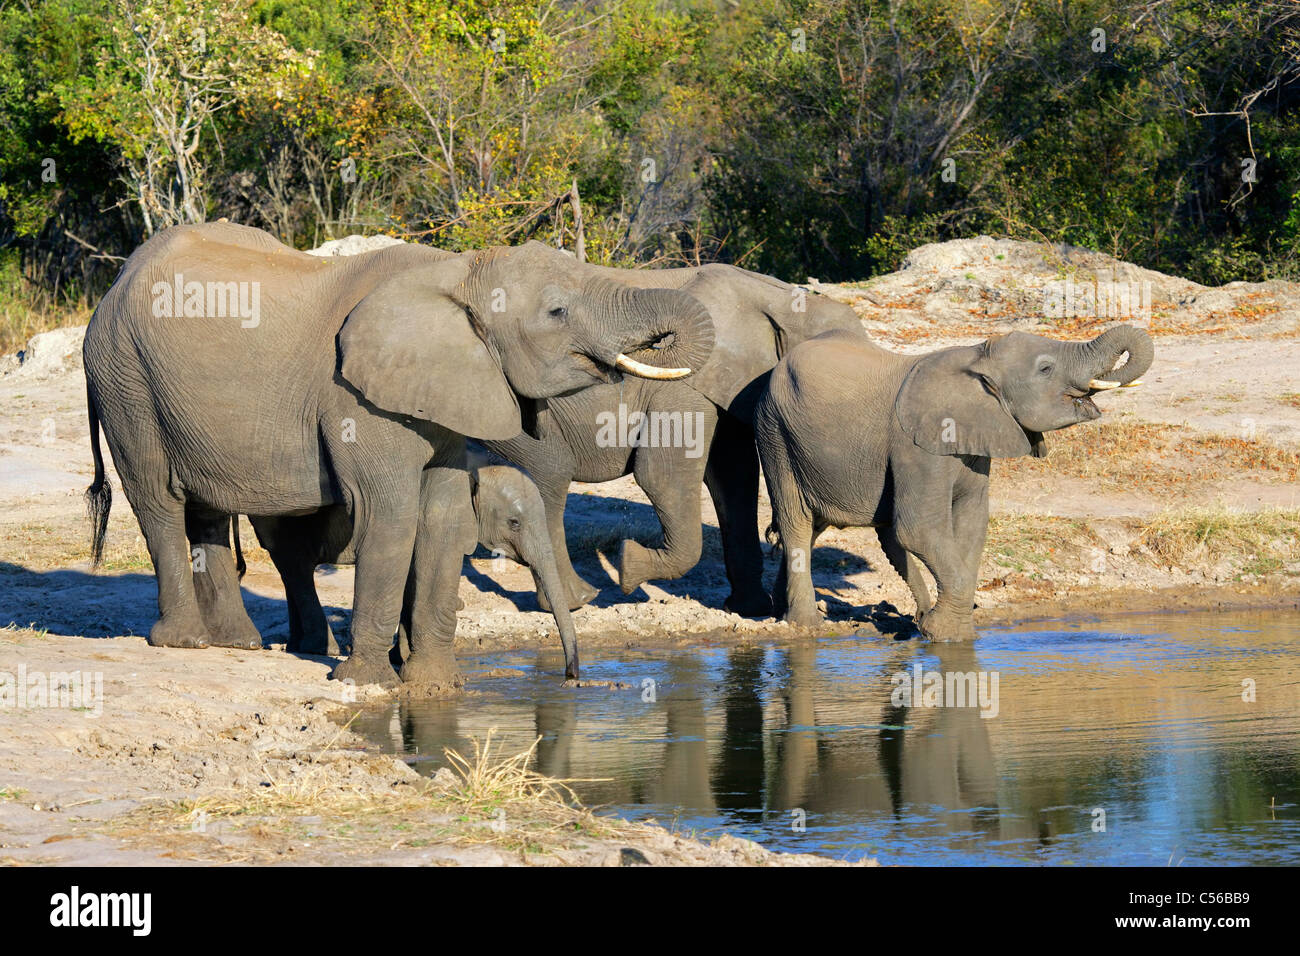 El elefante africano (Loxodonta africana), bebiendo agua en un abrevadero, Sabie-Sand reserva natural, Sudáfrica Foto de stock